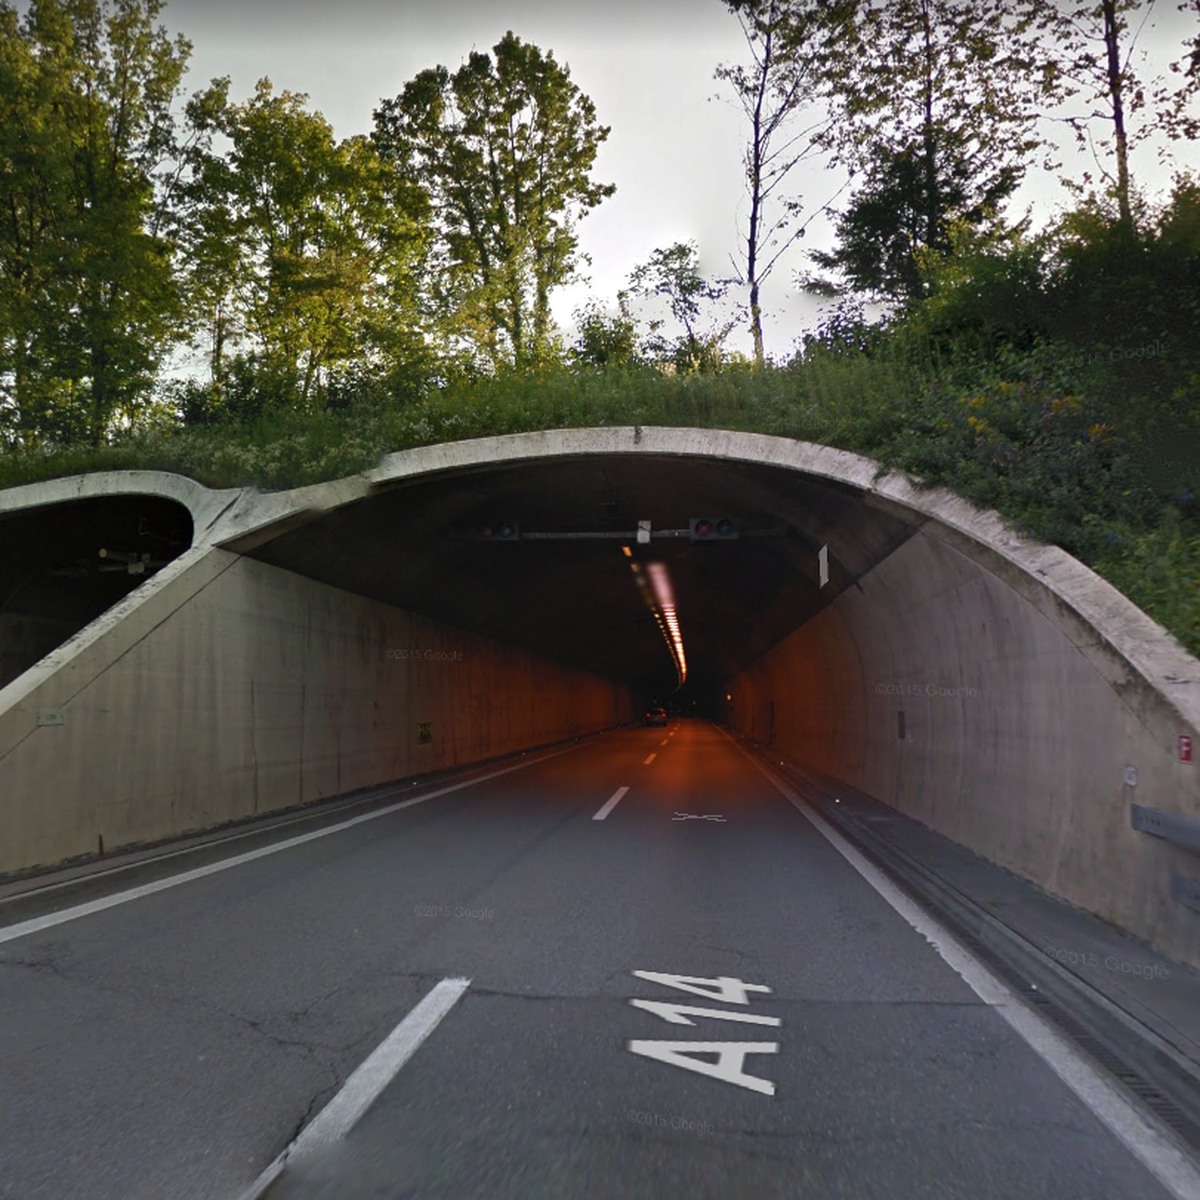 Es staut zwischen Gisikon-Root und dem Rathausen-Tunnel